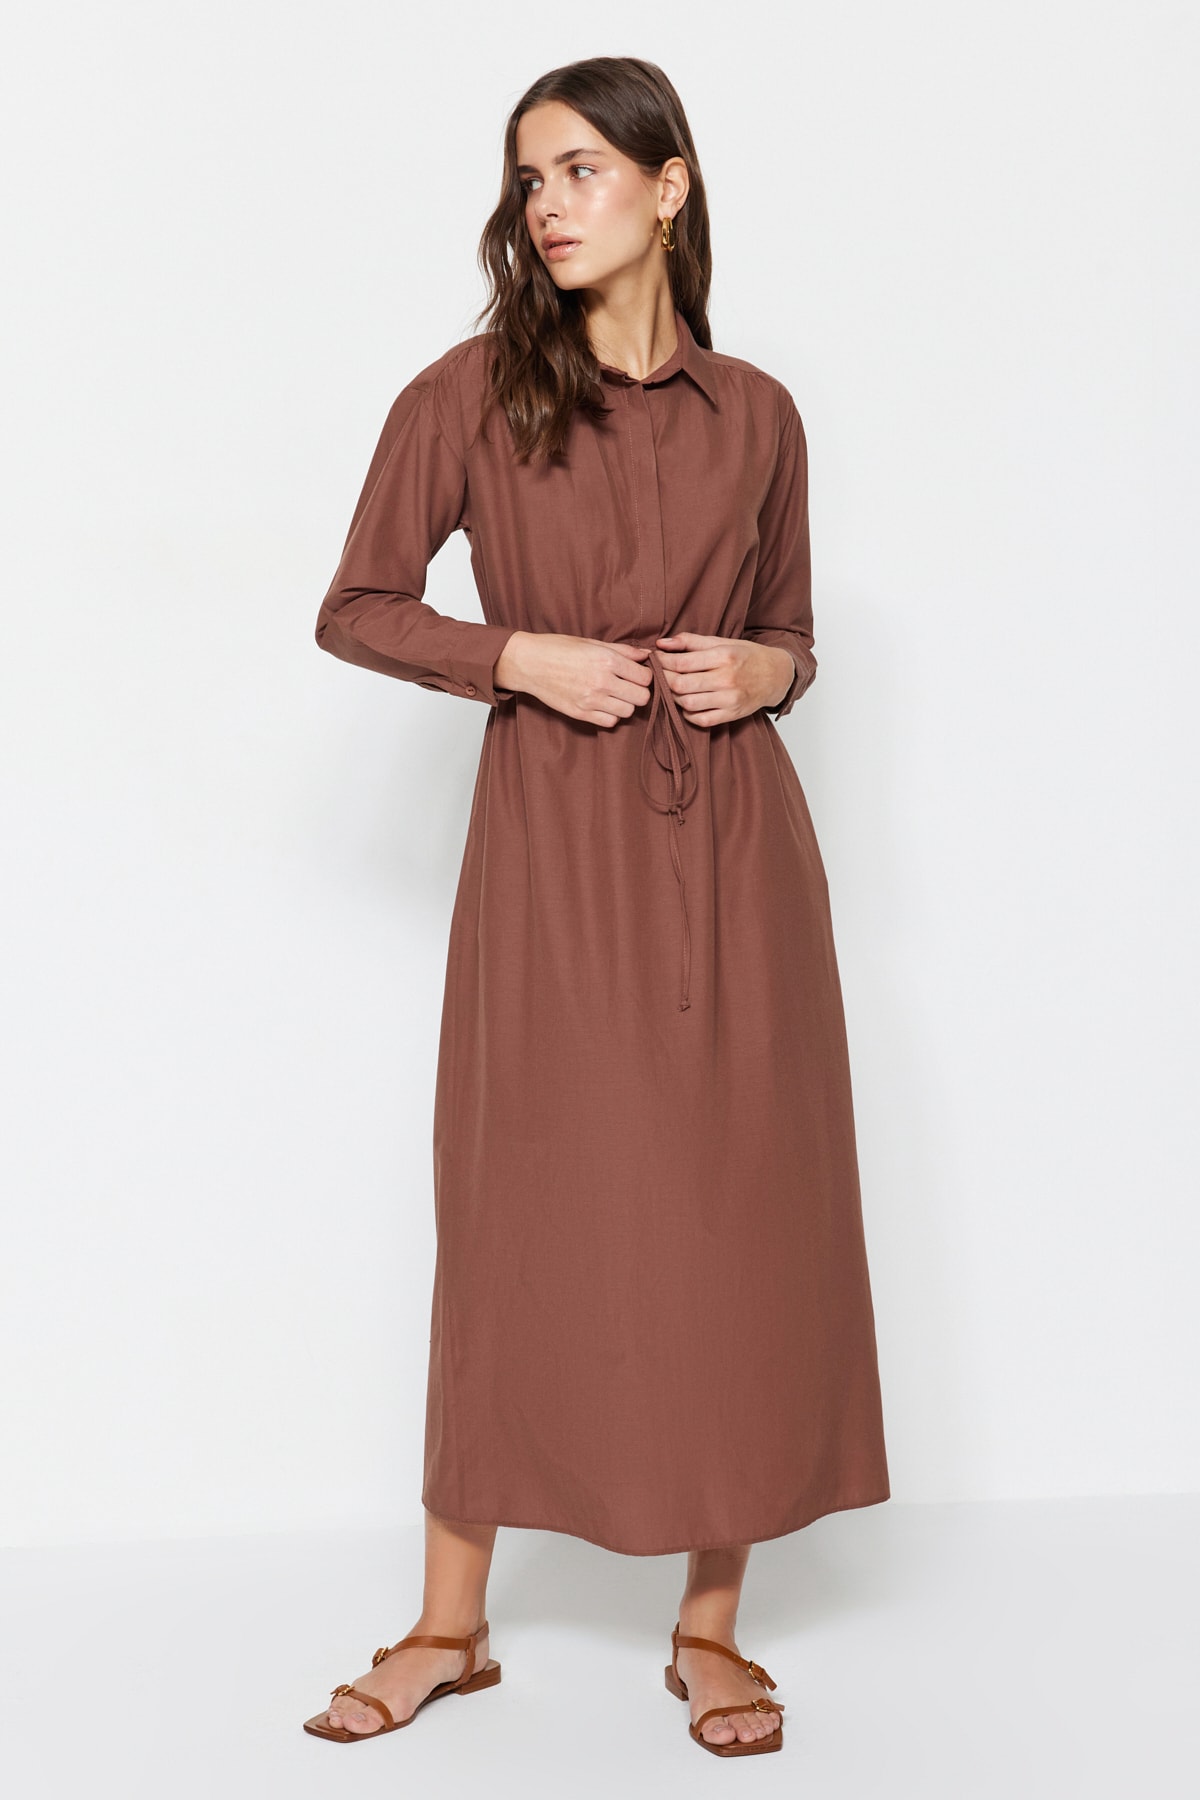 Trendyol Dark Brown Cotton Woven Dress With Smocked Waist